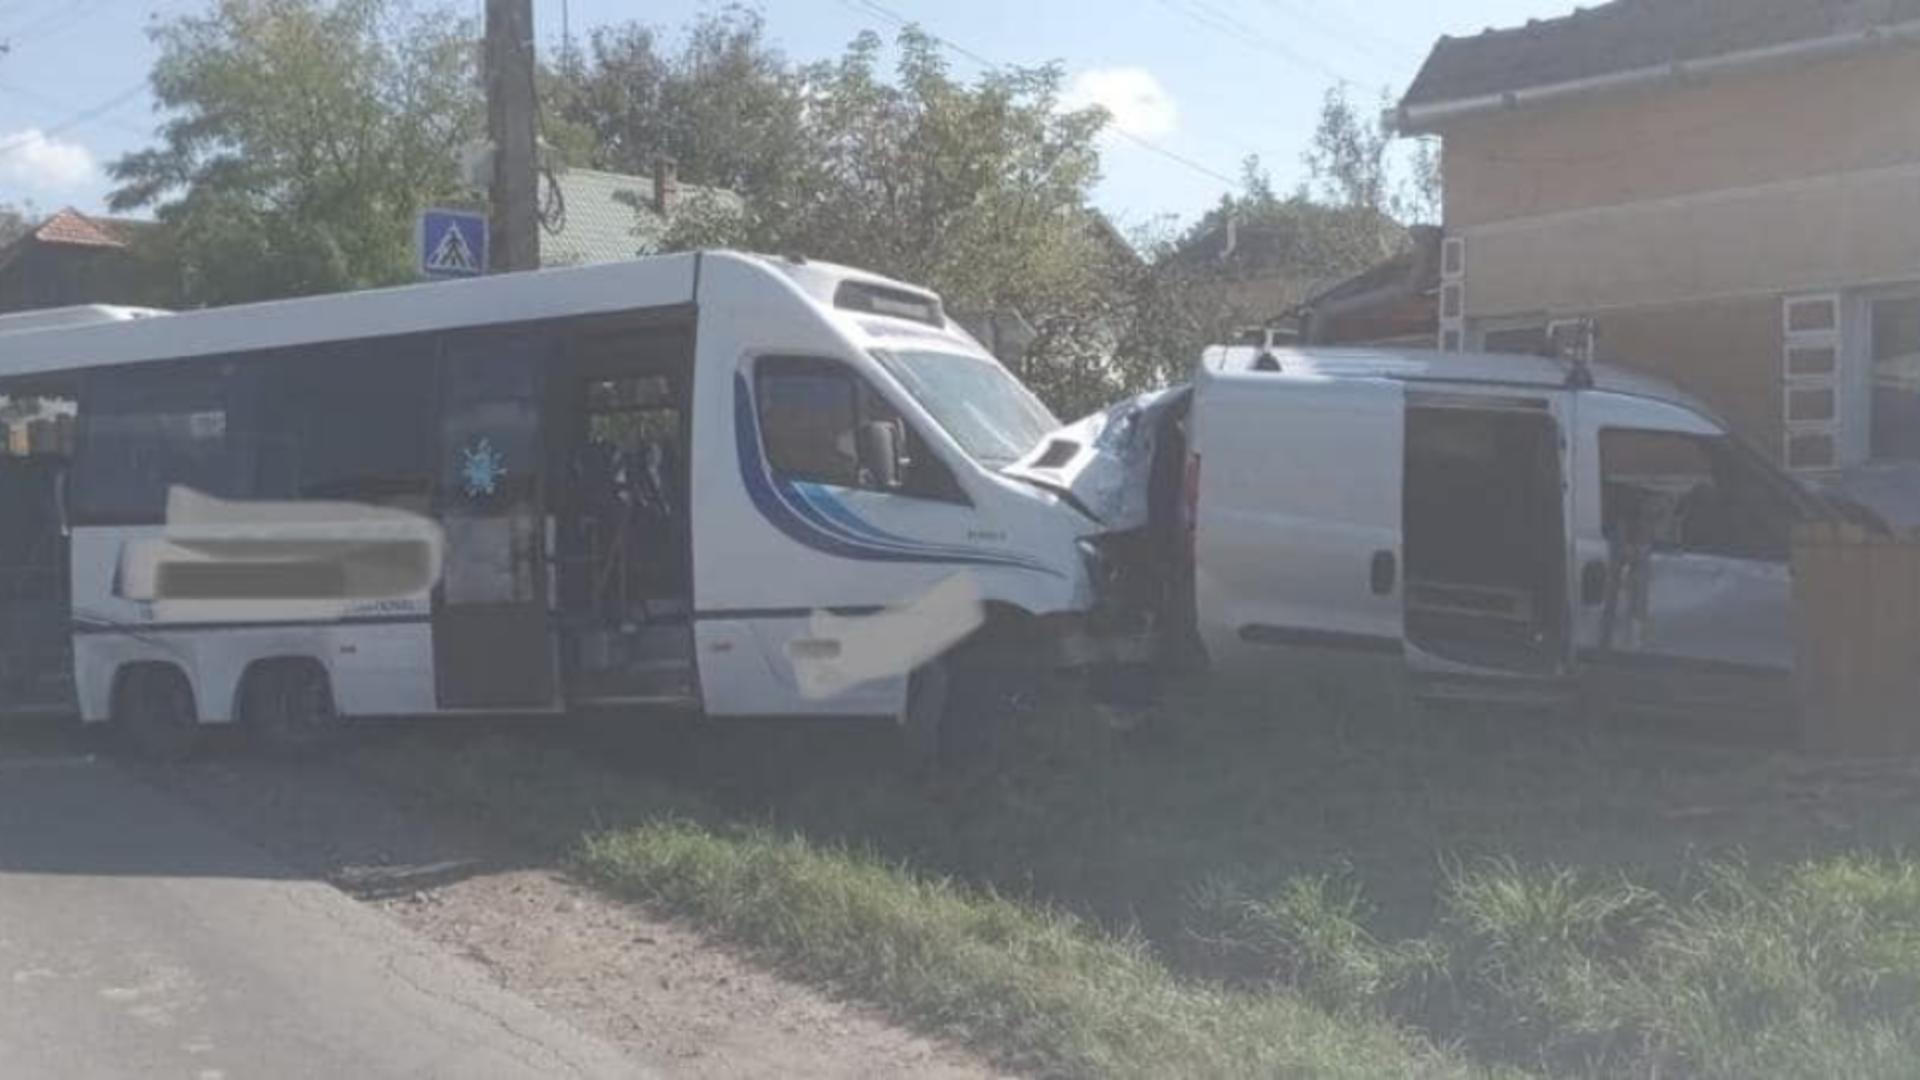 16 oameni sunt răniți, după ce mirobuzul a intrat în autoturism. Foto/ISU Mureș